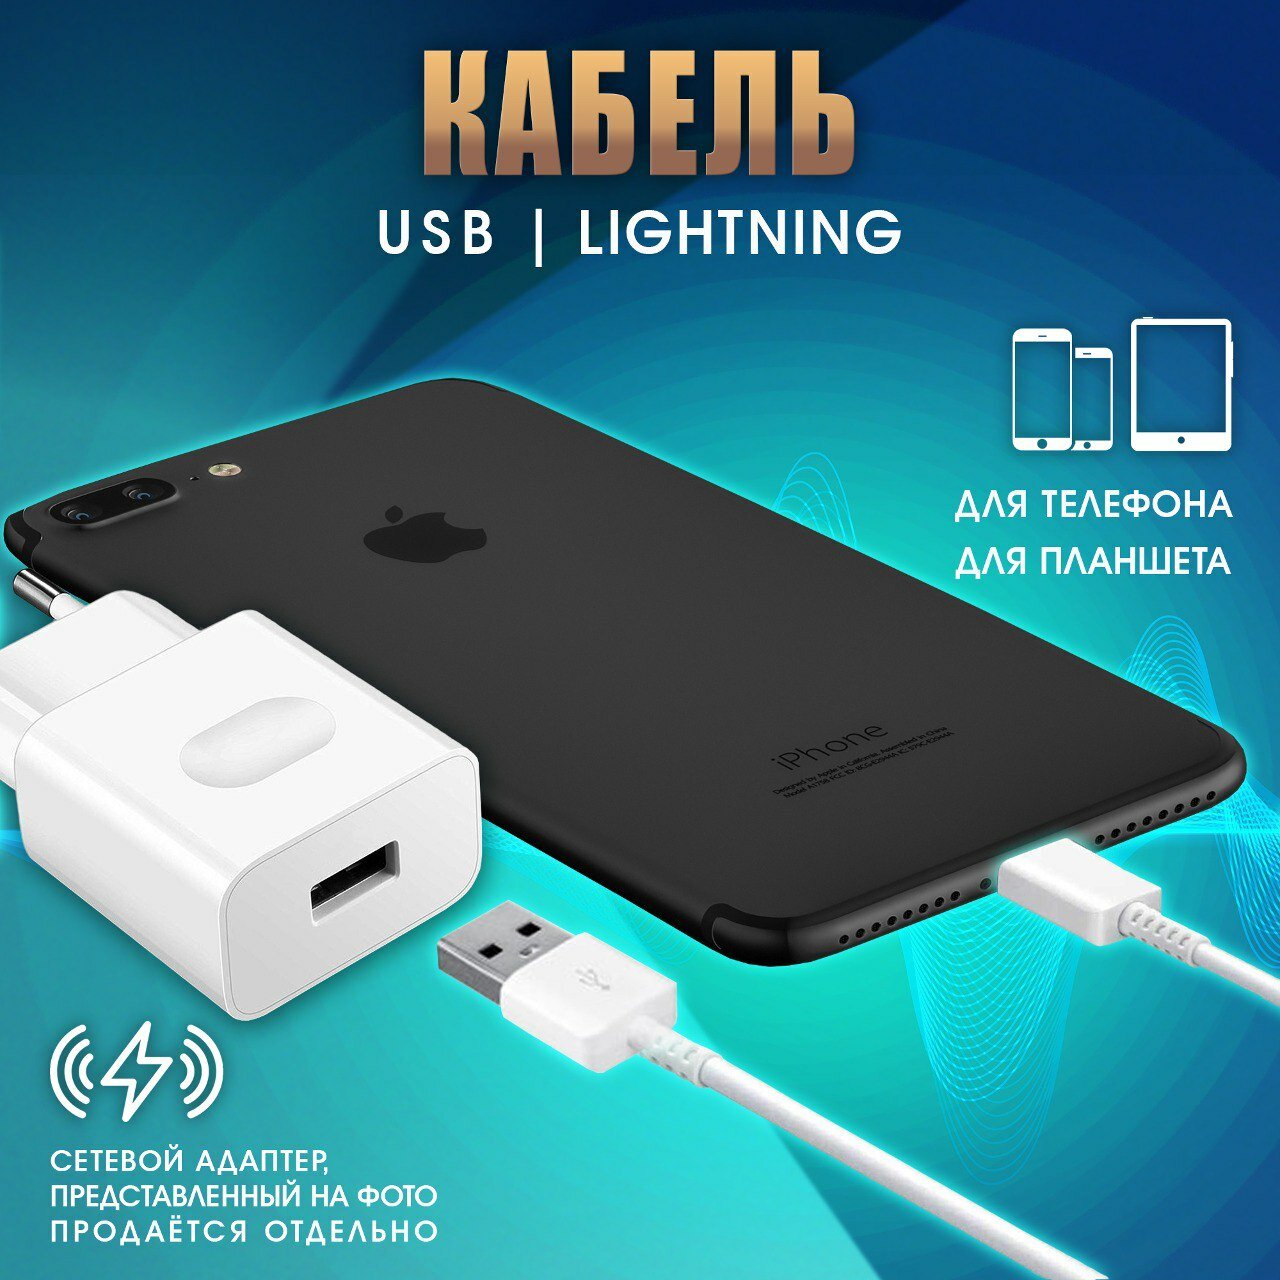 Кабель для зарядки Iphone Lightning быстрый заряд мощность 15W белый / зарядное устройство на телефона шнур питания провод на айфон 1 м